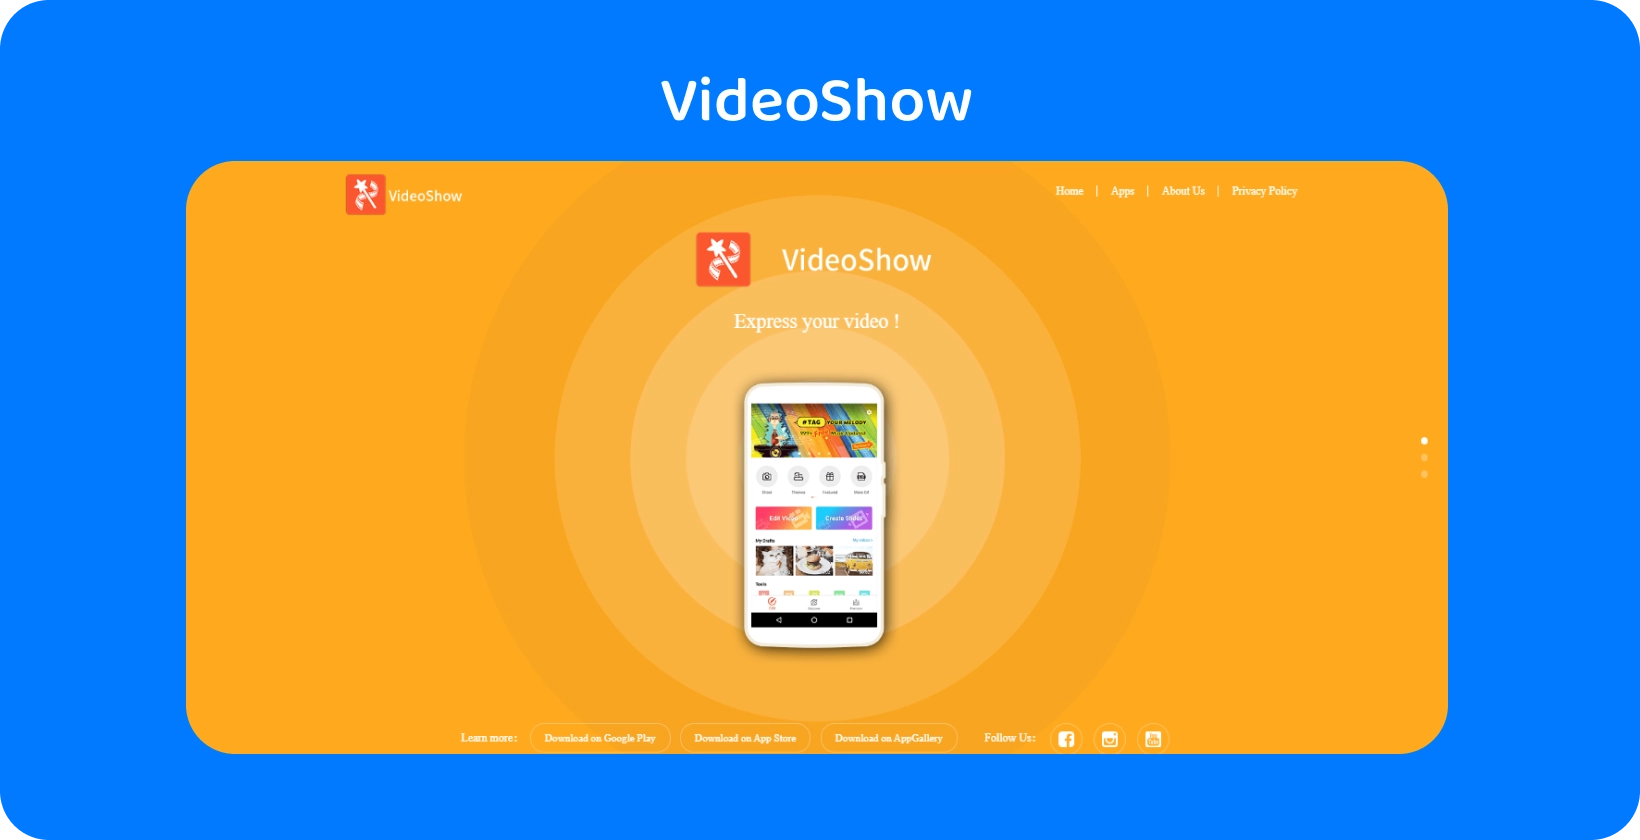 VideoShow rozhranie aplikácie na obrazovke a ponúka jednoduché nástroje a funkcie na úpravu videa na žiarivom oranžovom pozadí.